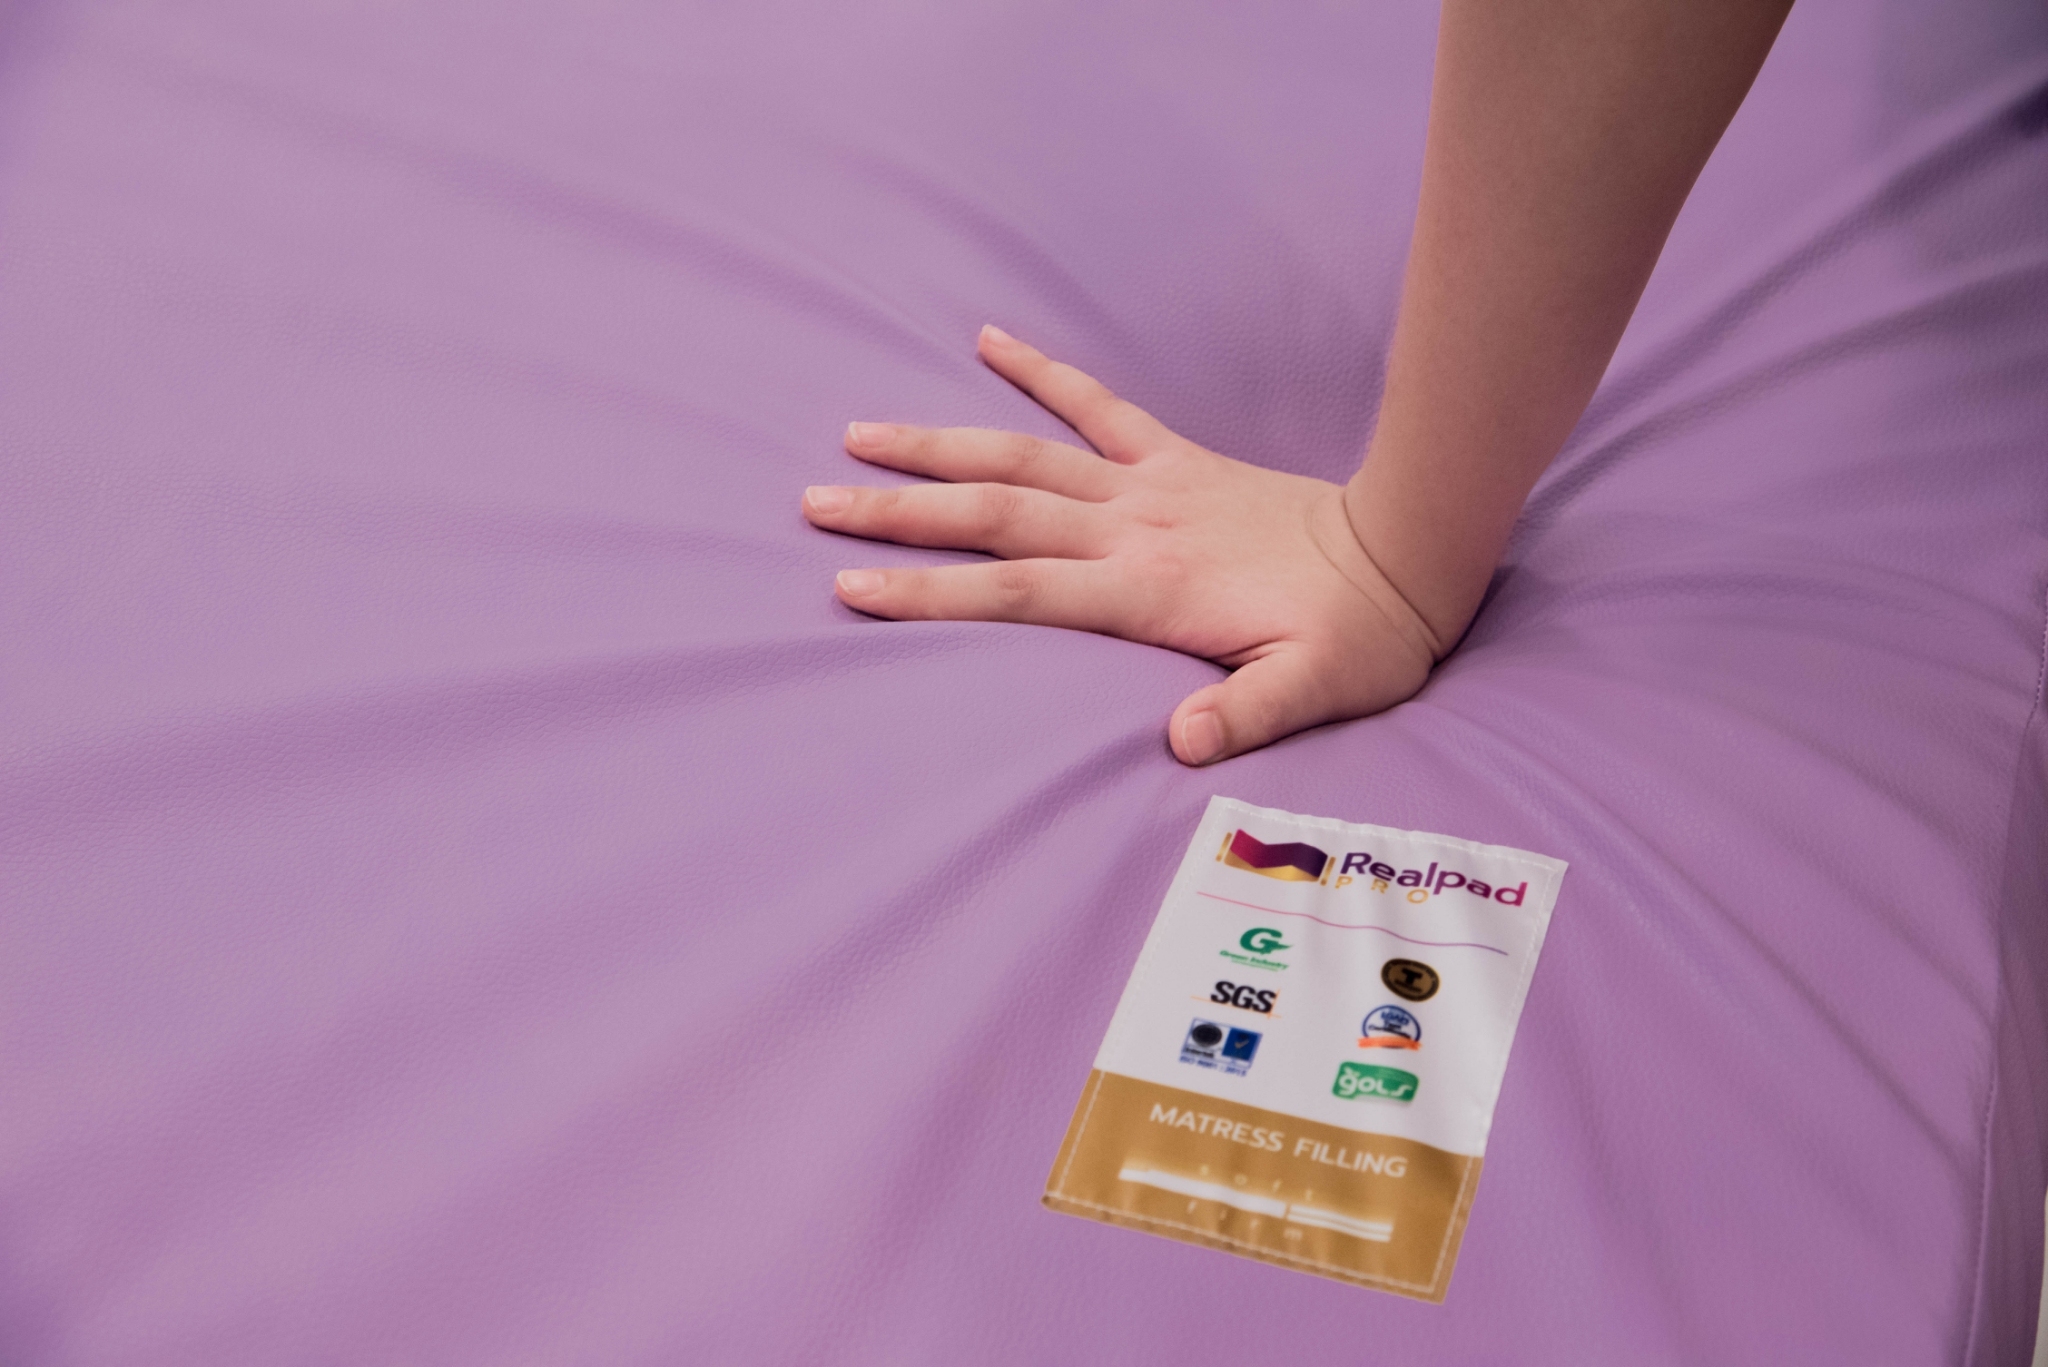 ที่นอนเพื่อสุขภาพ ที่นอนยางพาราแท้ 100% รุ่น Realpad PRO